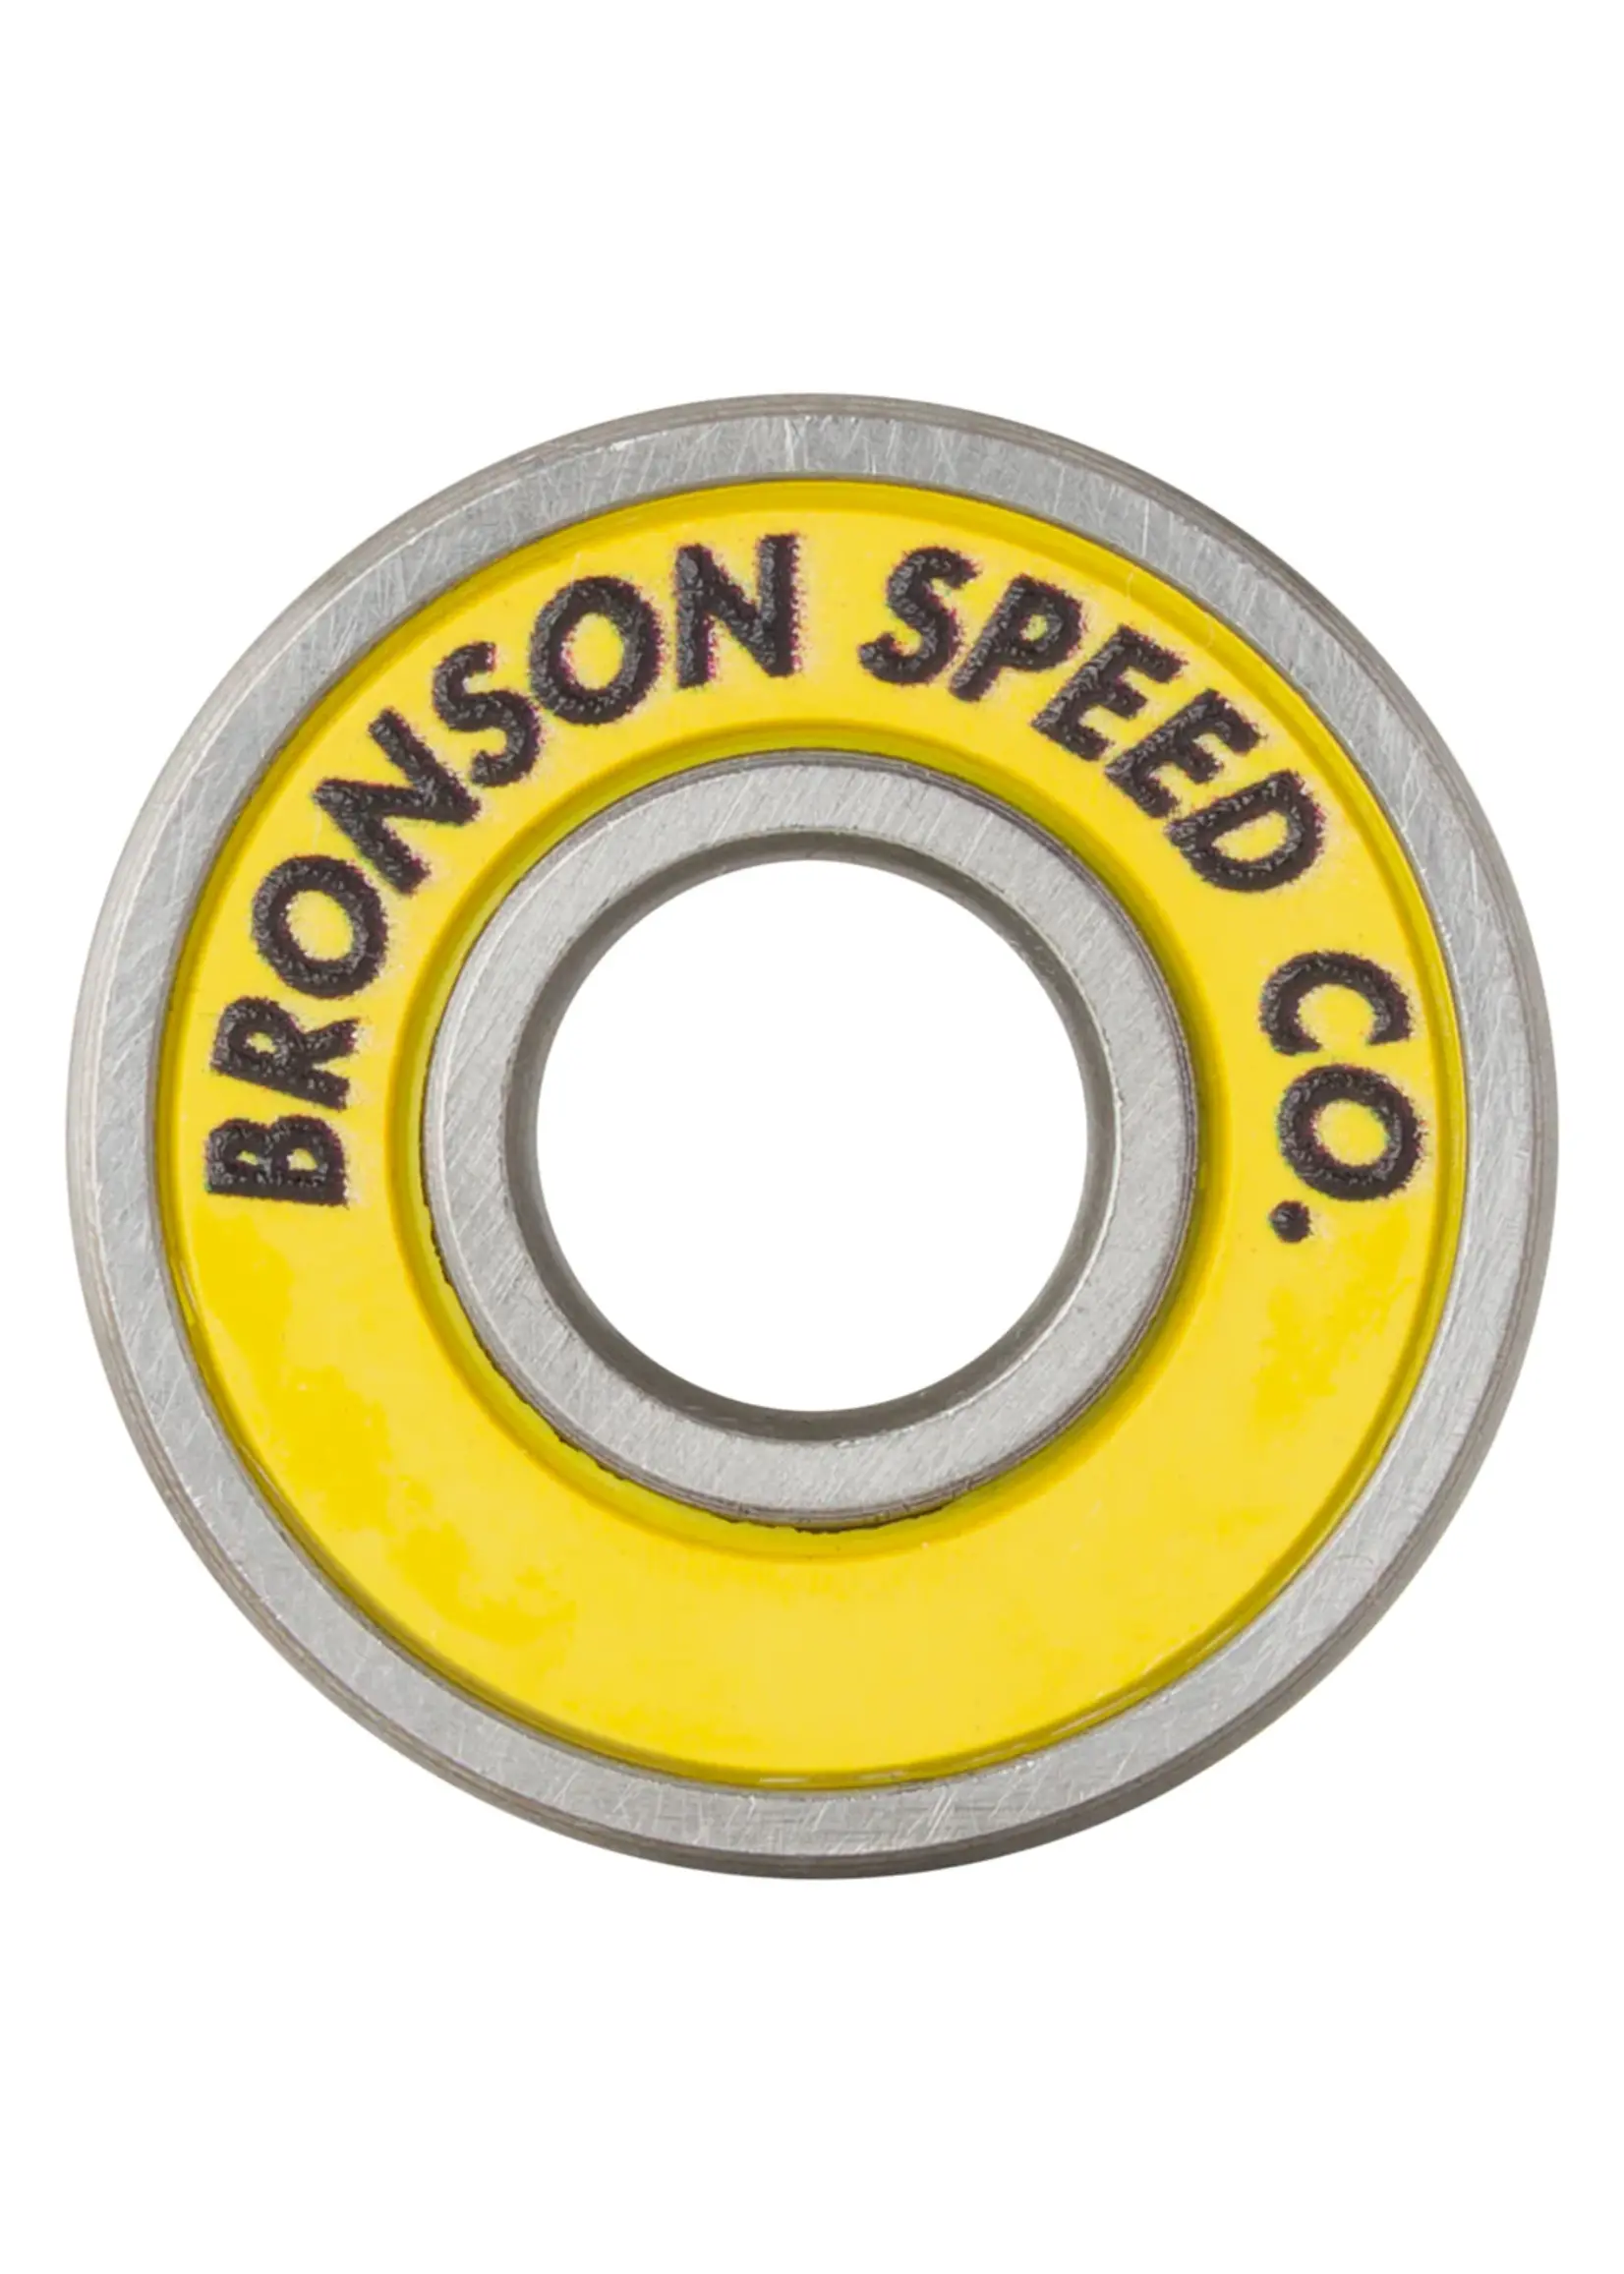 BRONSON MOONEYES G3 BEARINGS